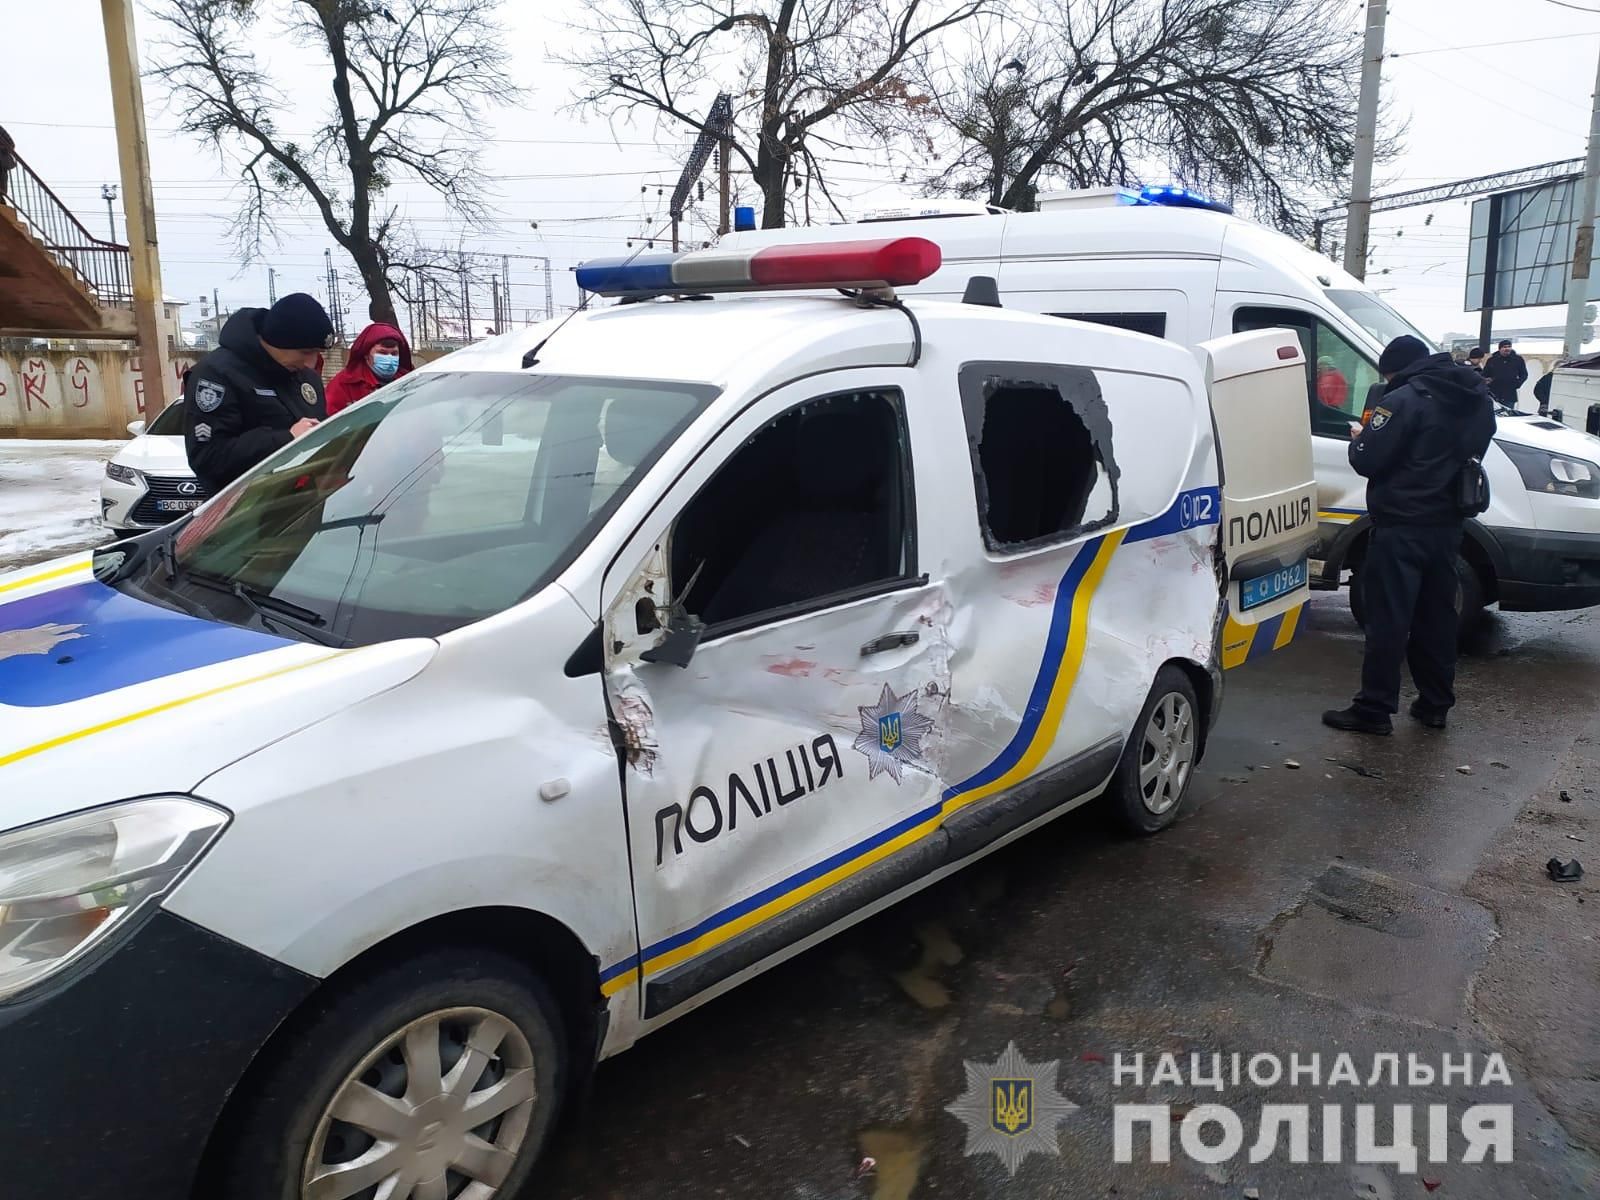 Пострадали 7 человек: в полиции рассказали детали масштабного ДТП со служебным авто во Львове